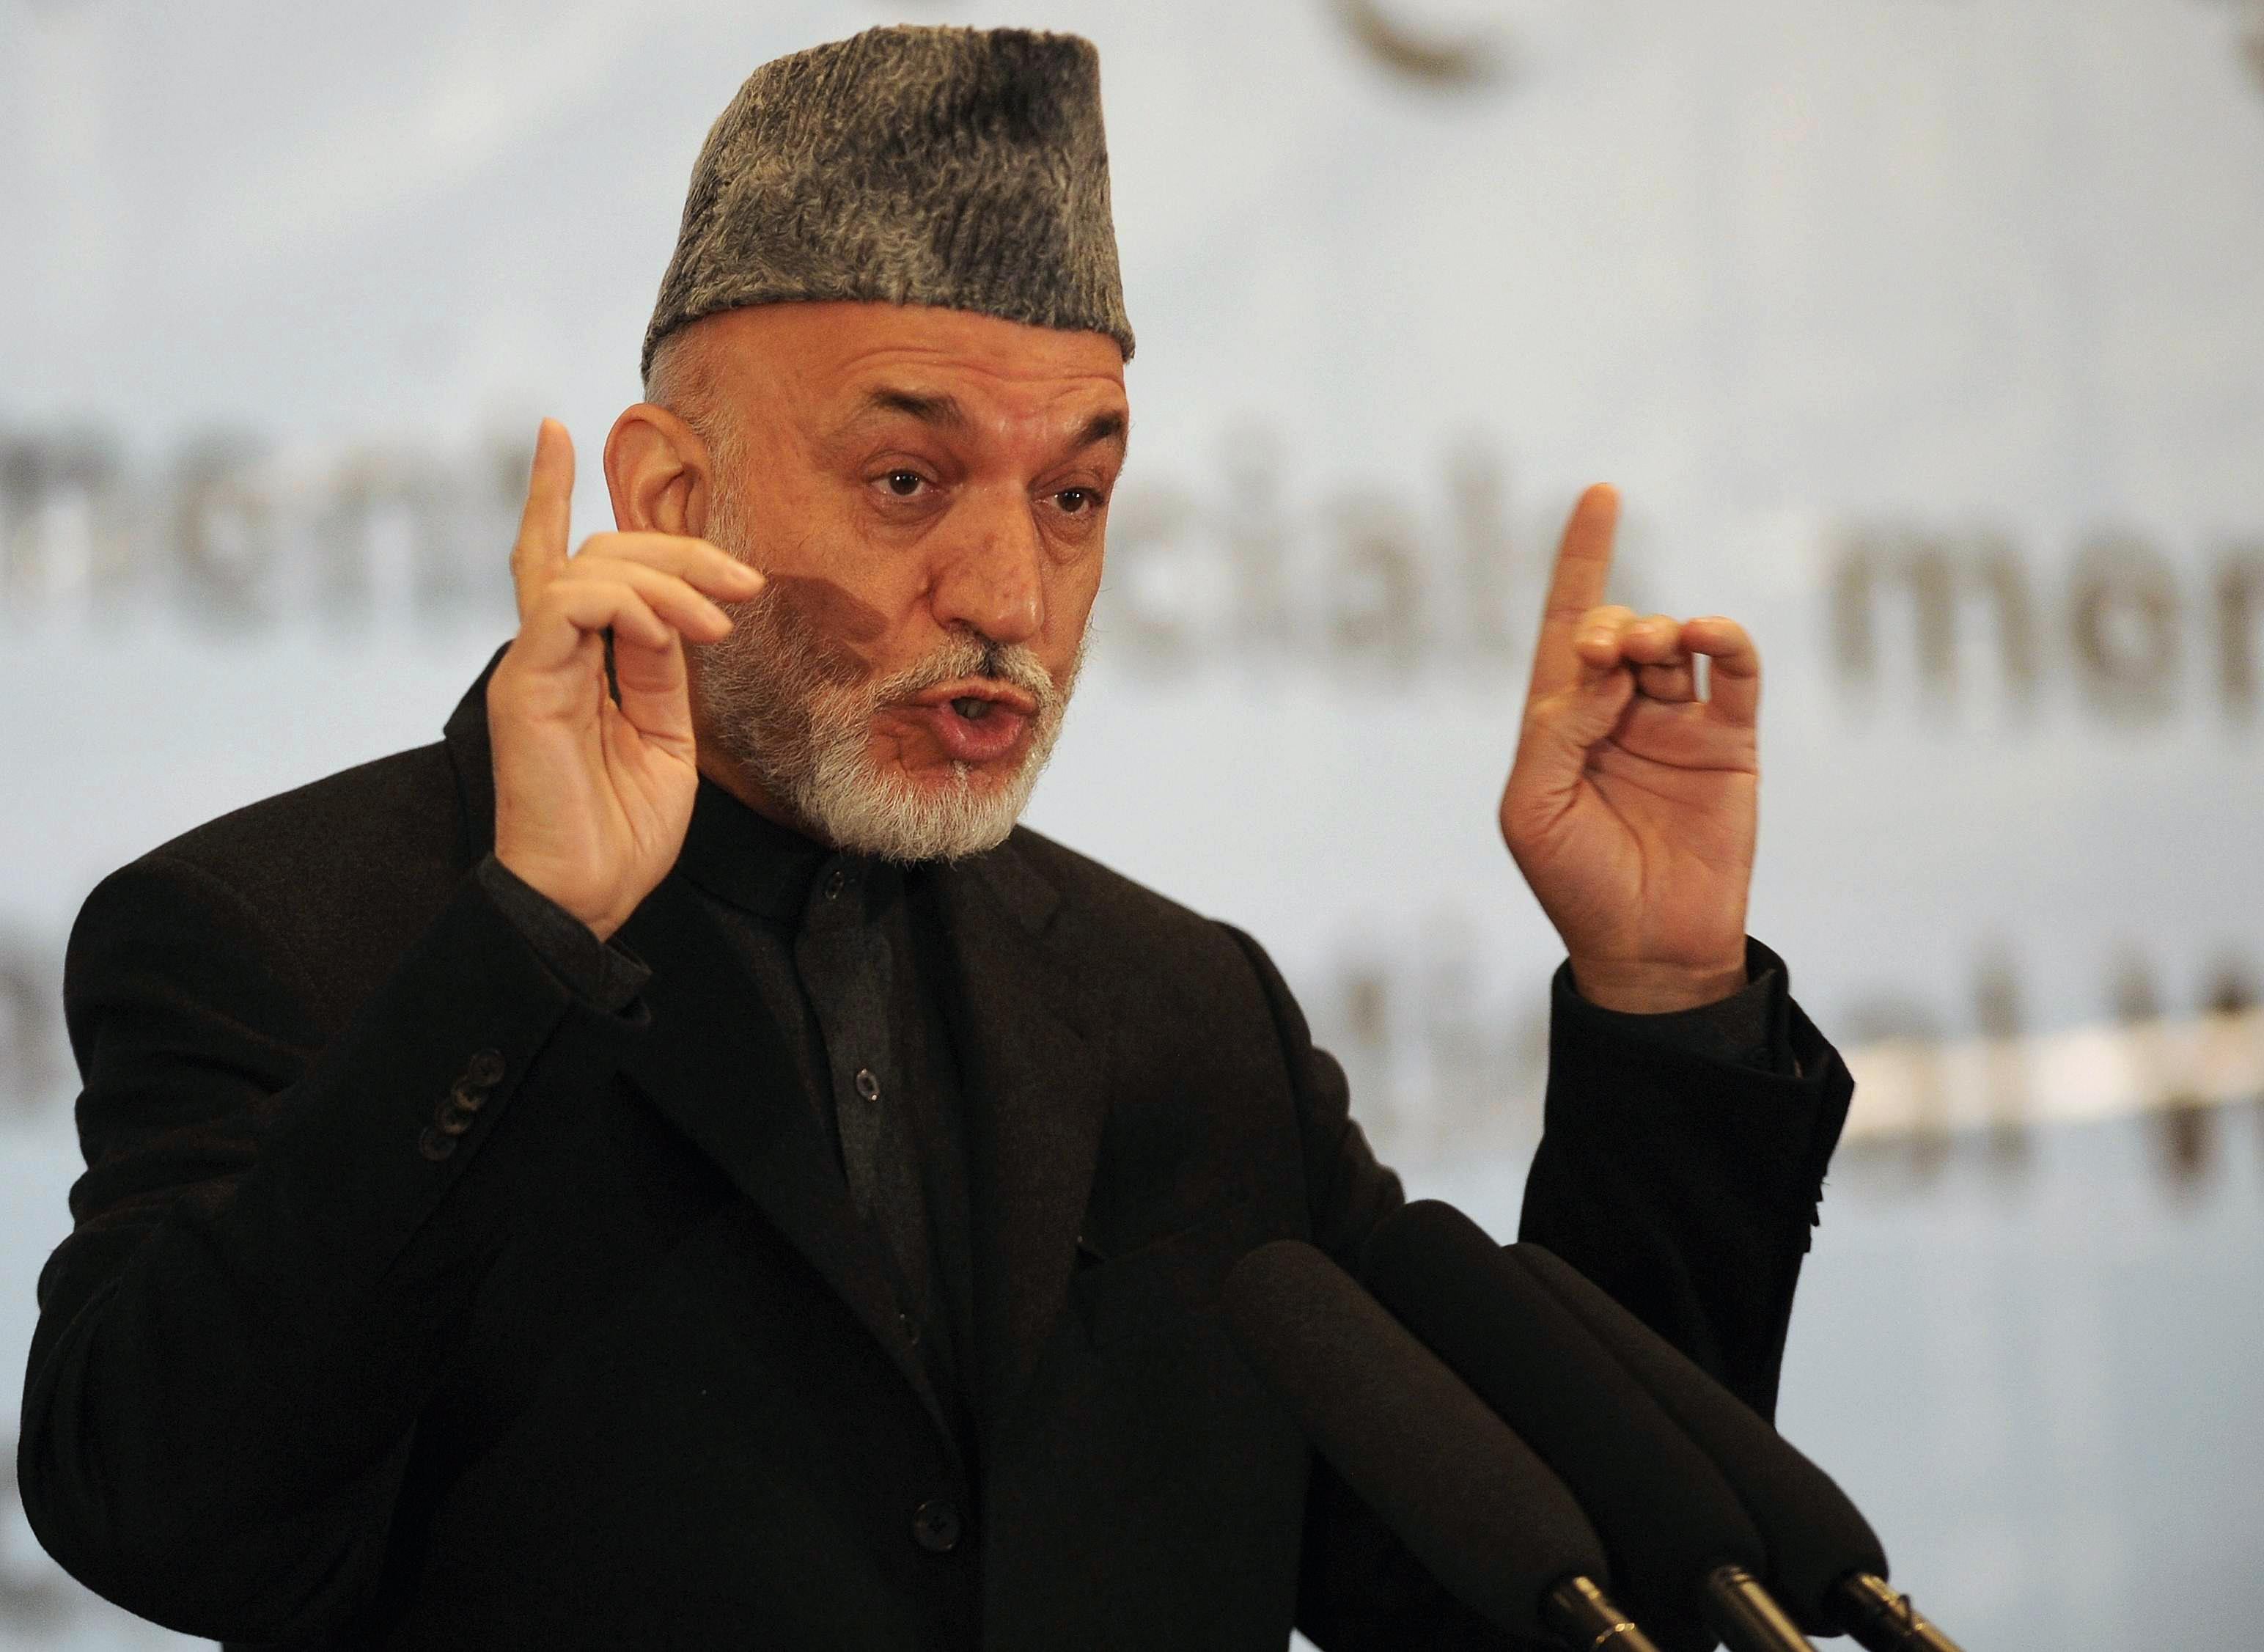 Le président Hamid Karzai a exigé des explications aux autorités américaines. [AFP - Shah Marai]